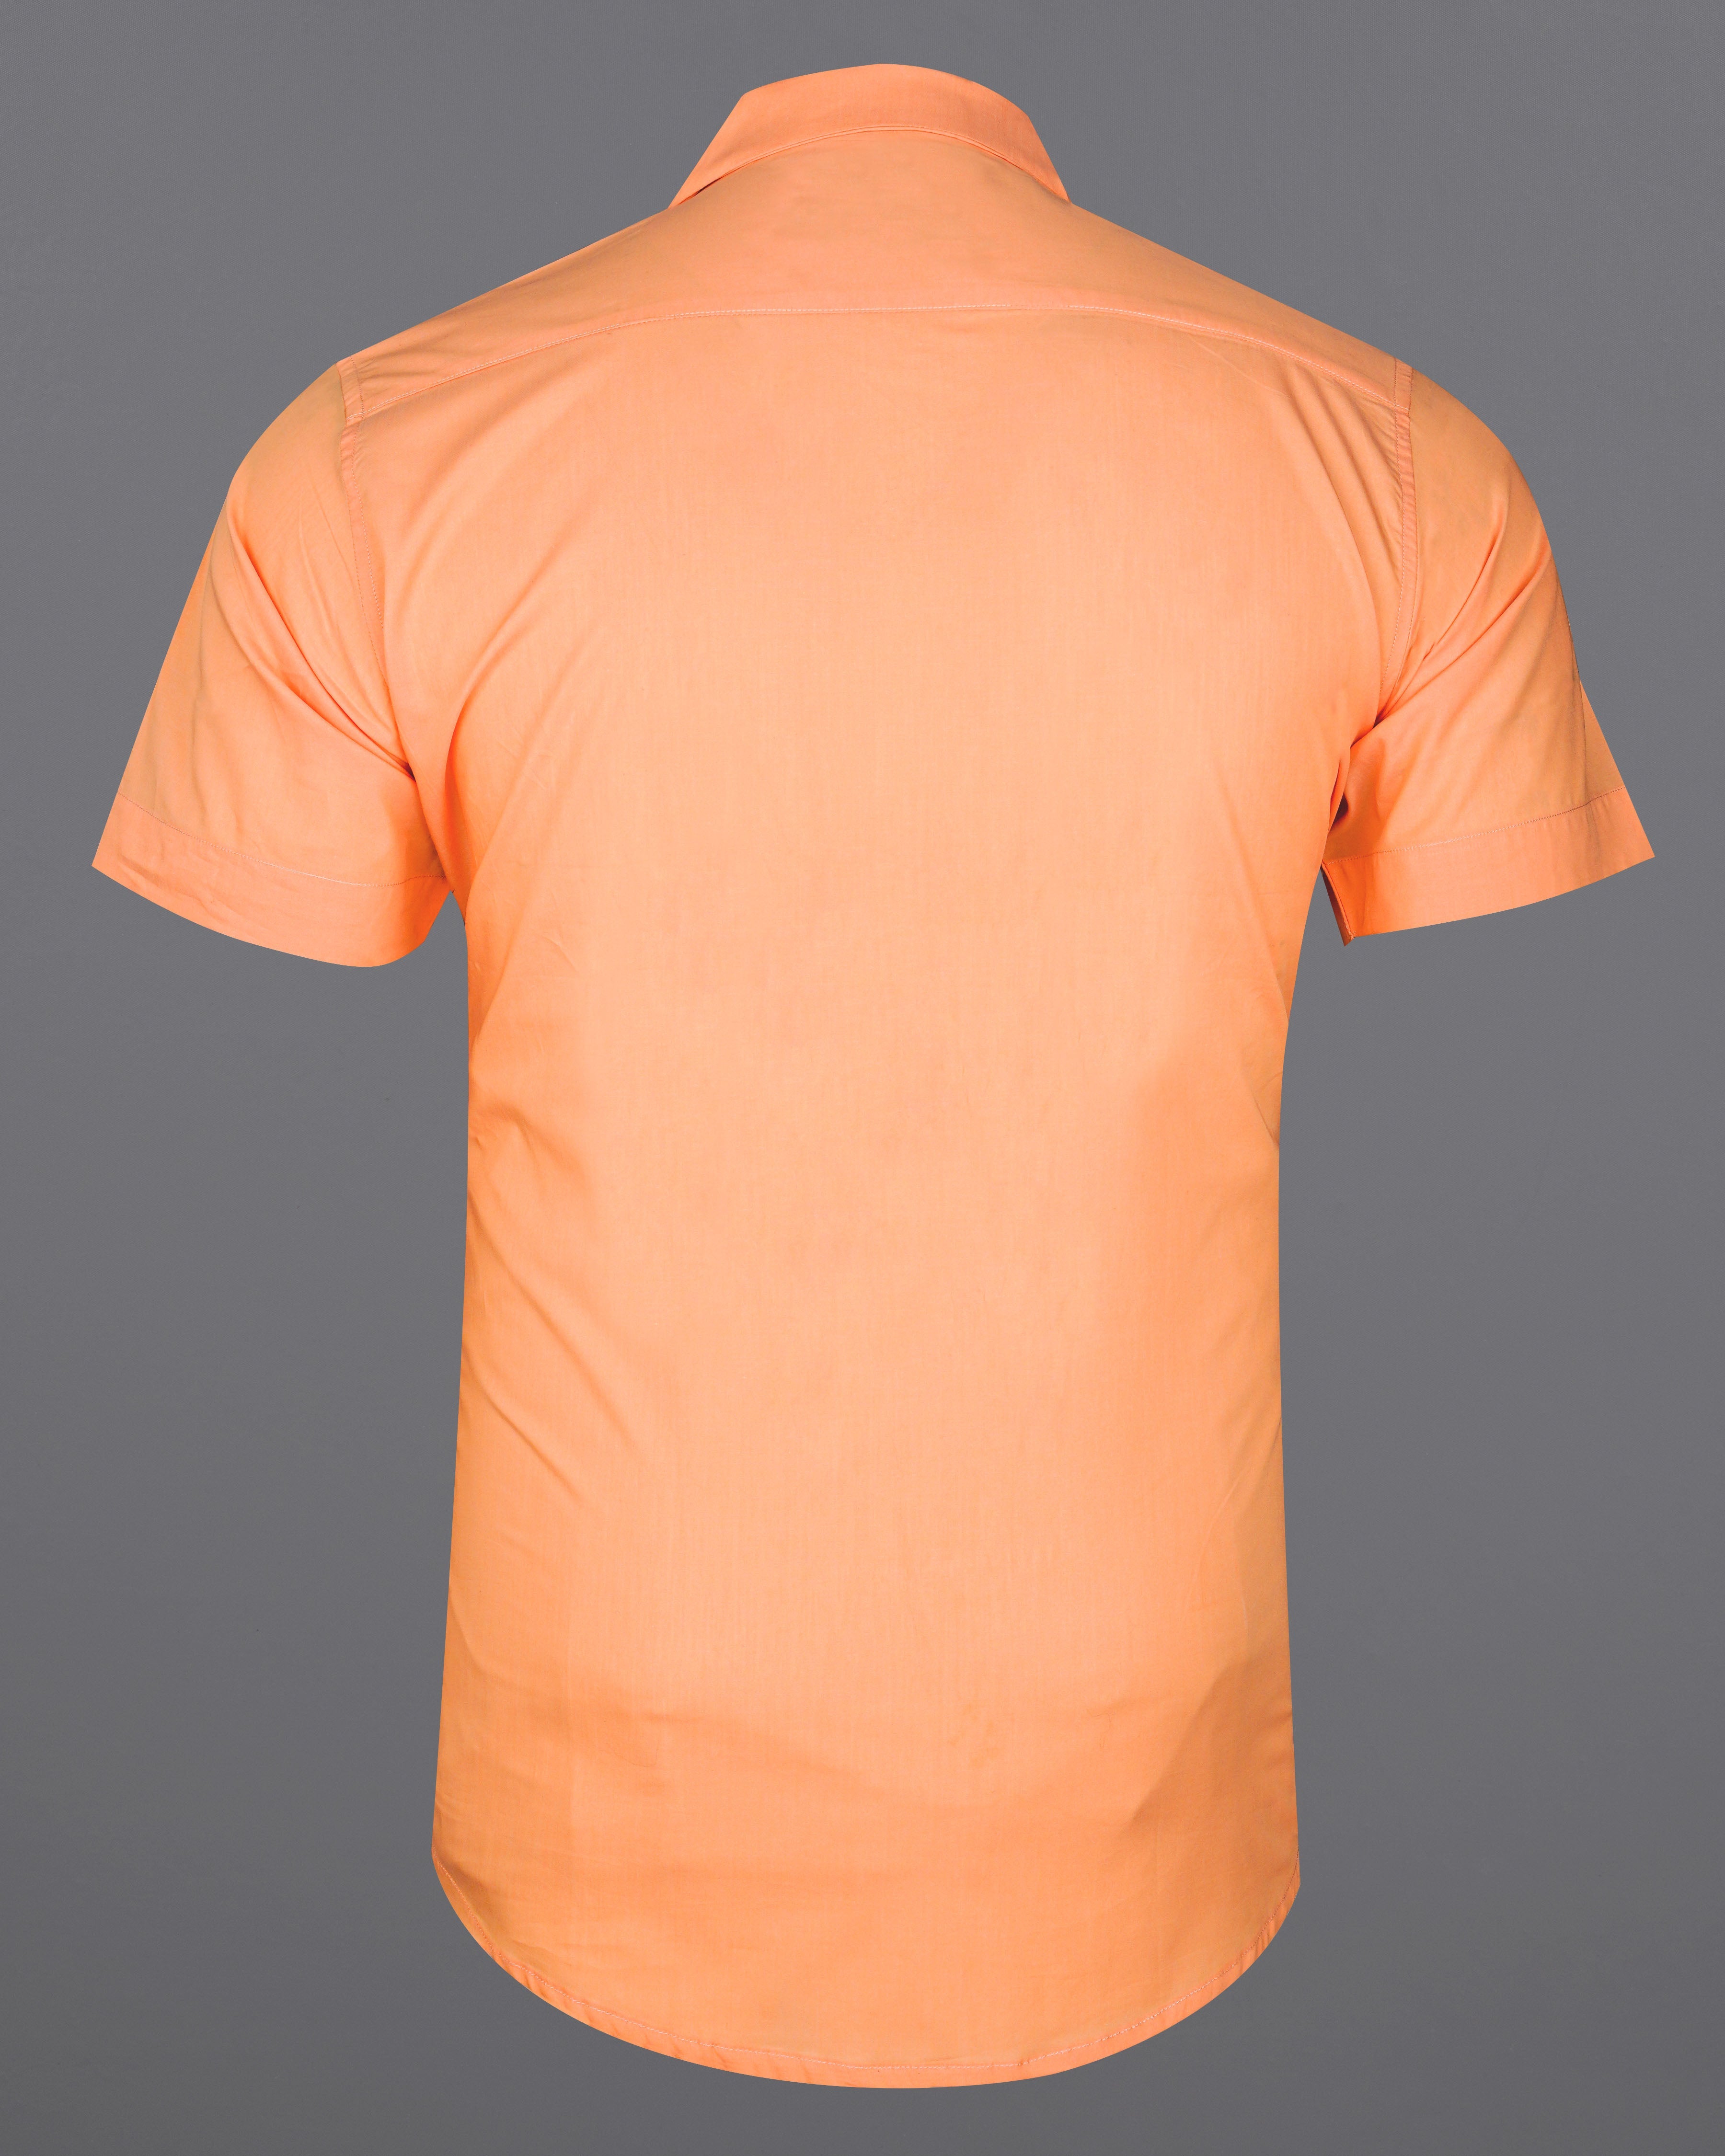 Tacao Orange Premium Cotton Designer Shirt  8549-CC-P299-38,8549-CC-P299-H-38,8549-CC-P299-39,8549-CC-P299-H-39,8549-CC-P299-40,8549-CC-P299-H-40,8549-CC-P299-42,8549-CC-P299-H-42,8549-CC-P299-44,8549-CC-P299-H-44,8549-CC-P299-46,8549-CC-P299-H-46,8549-CC-P299-48,8549-CC-P299-H-48,8549-CC-P299-50,8549-CC-P299-H-50,8549-CC-P299-52,8549-CC-P299-H-52